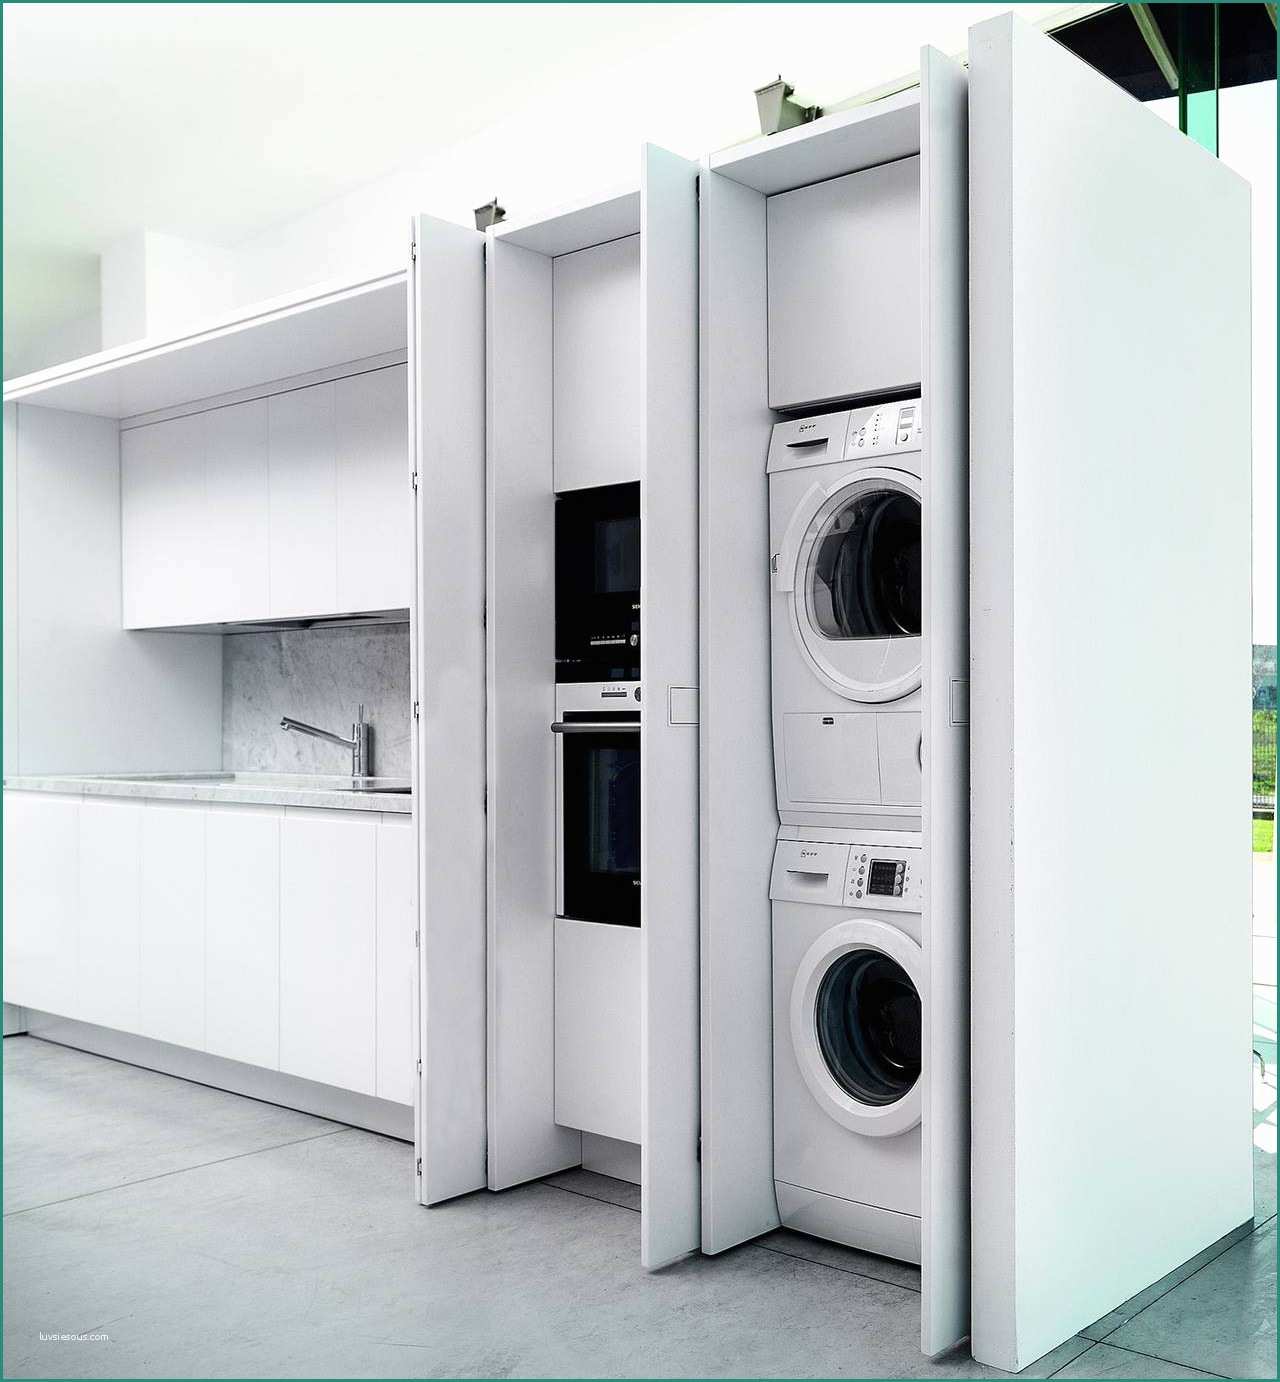 Mobile Colonna Lavatrice asciugatrice Ikea E Lavanderia Integrata In Cucina